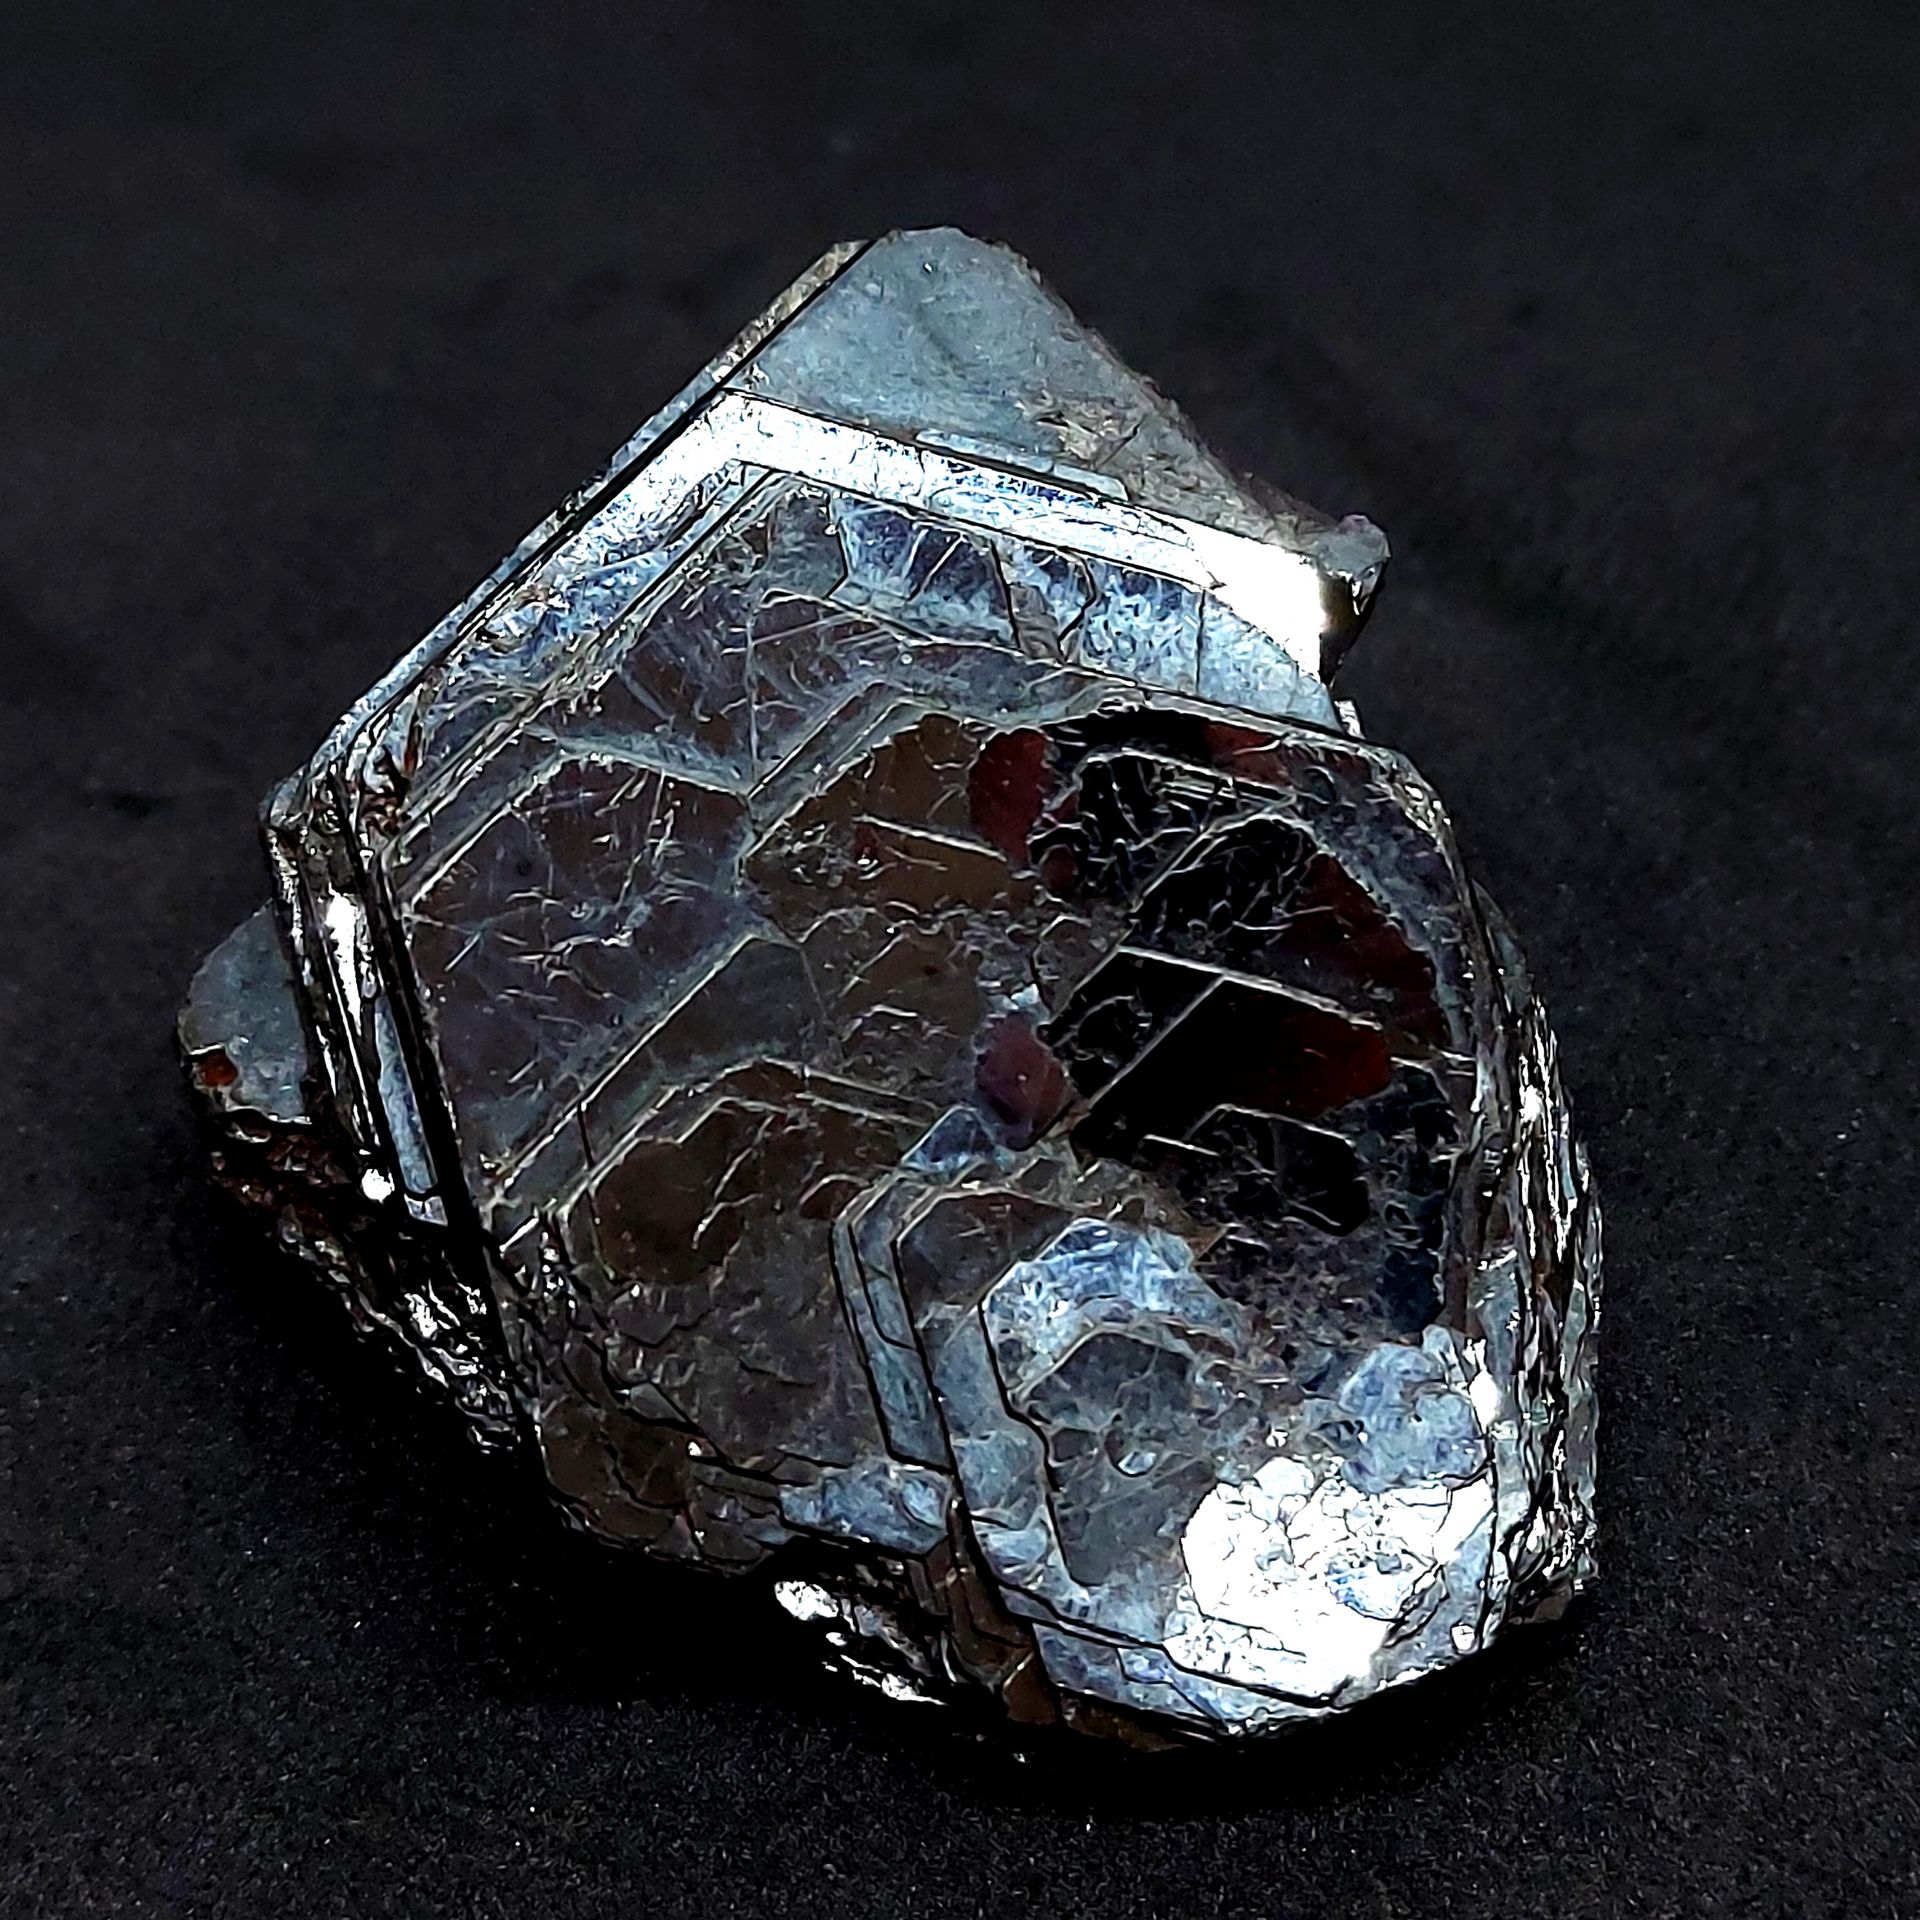 HEMATITE - 283 gr 黑色金属叶片层中的绿松石 "铁玫瑰" - 产自巴西 - 黑色 - 不精确 - 重量283克 - 水晶尺寸6.4 x 5.5 &hellip;